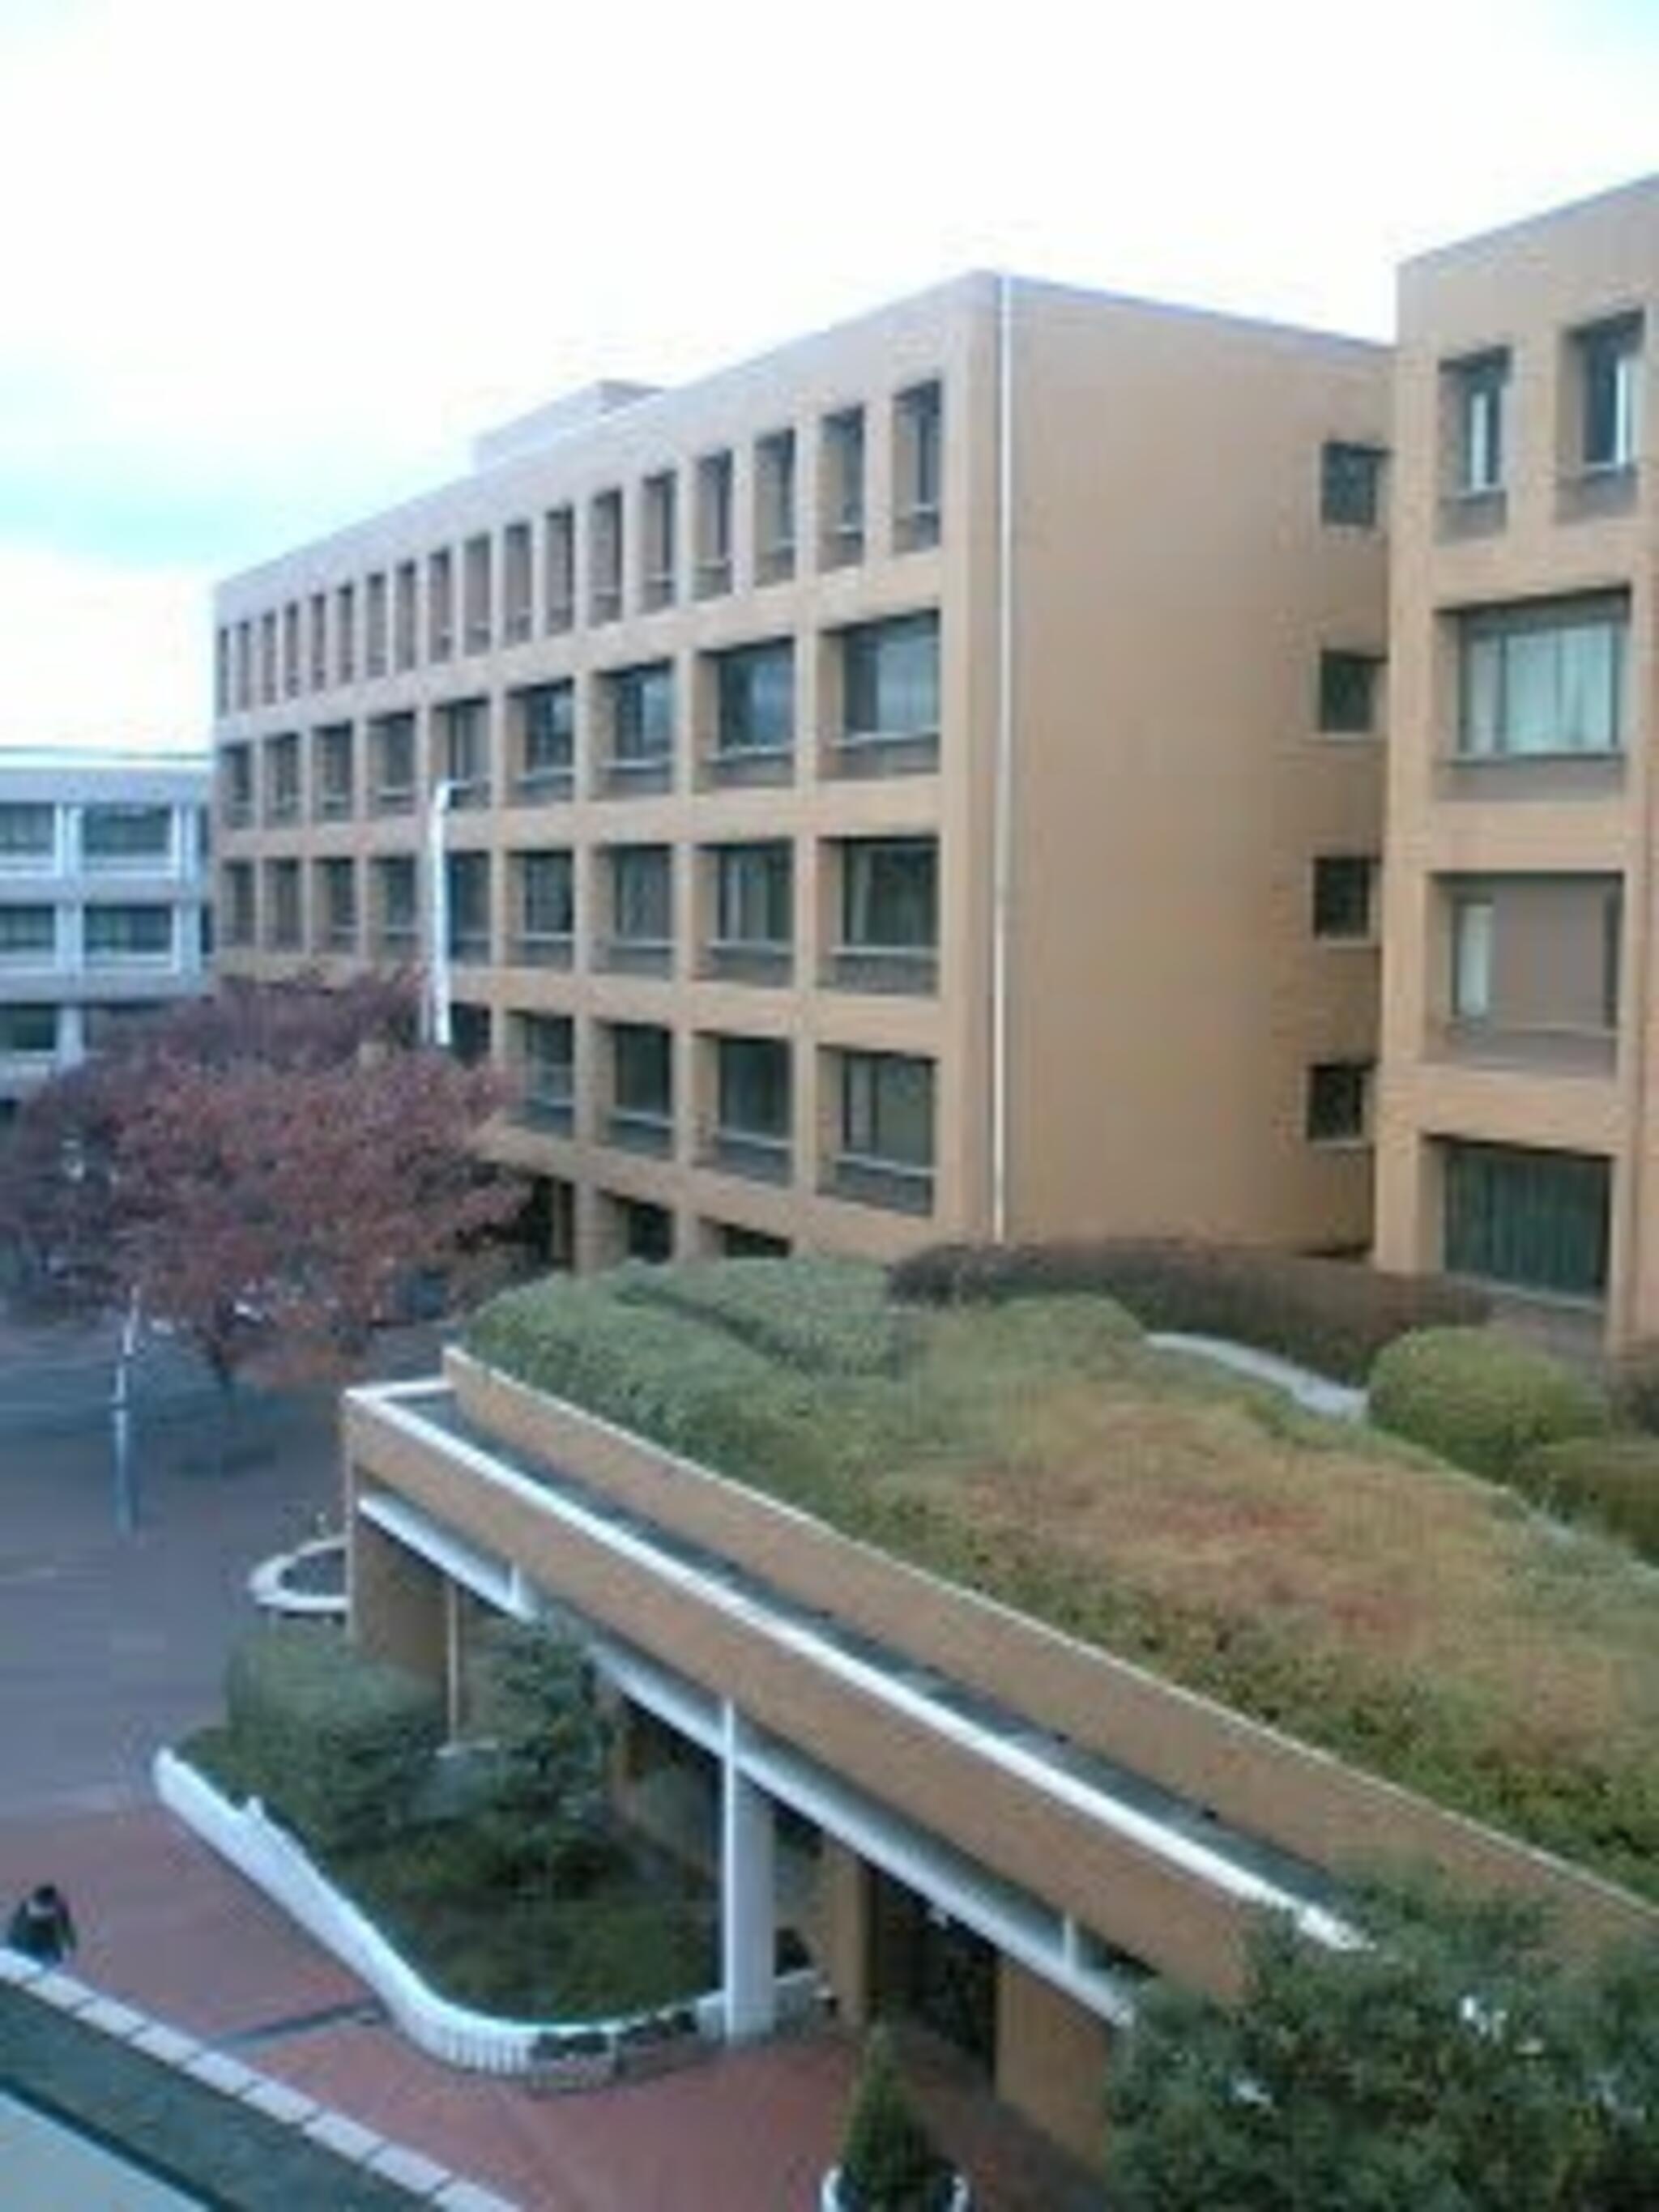 名城大学 天白キャンパスの代表写真9